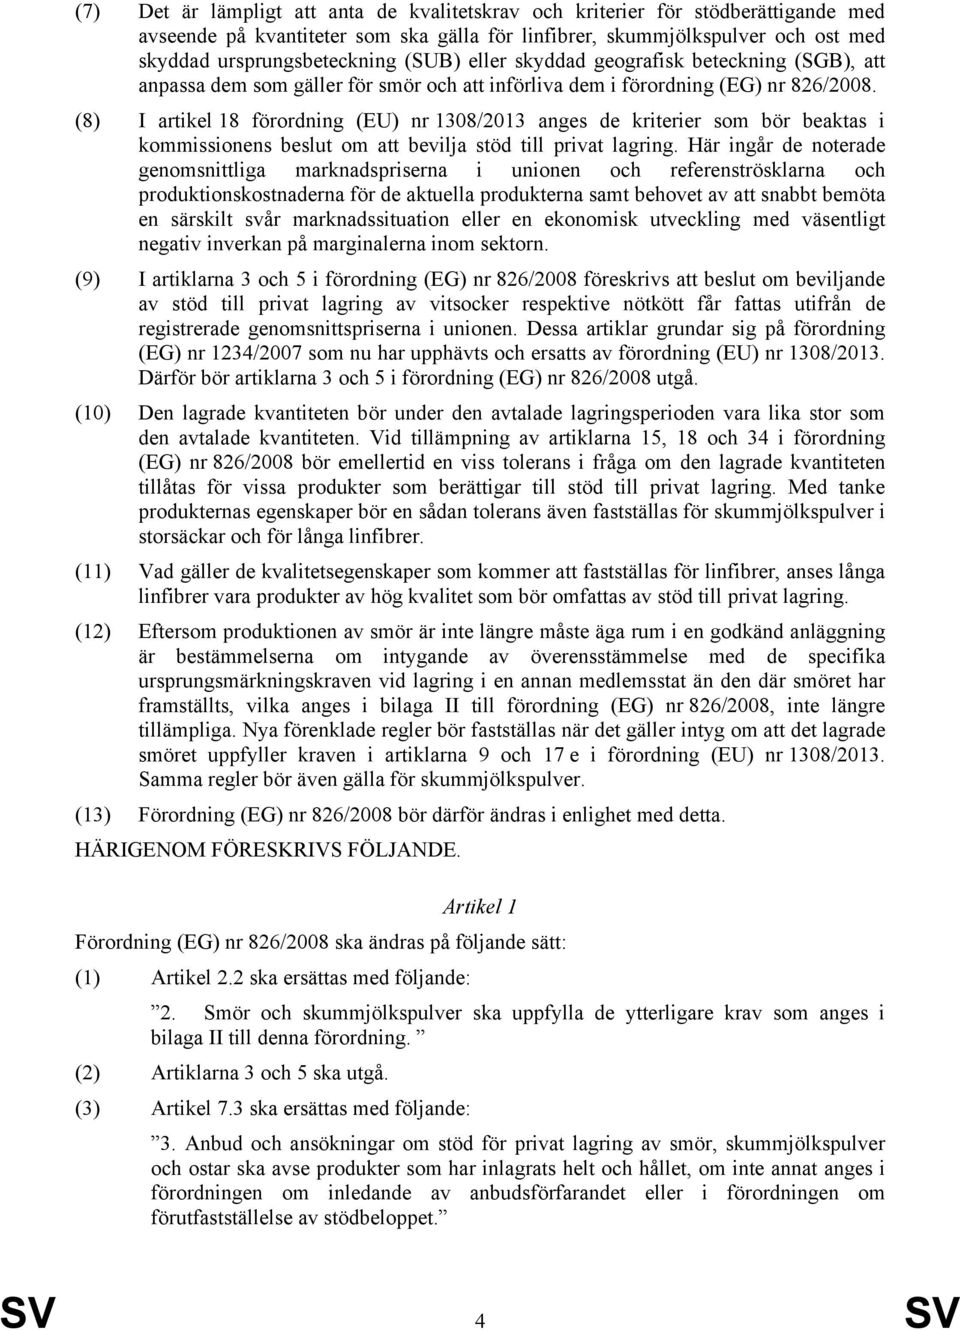 (8) I artikel 18 förordning (EU) nr 1308/2013 anges de kriterier som bör beaktas i kommissionens beslut om att bevilja stöd till privat lagring.